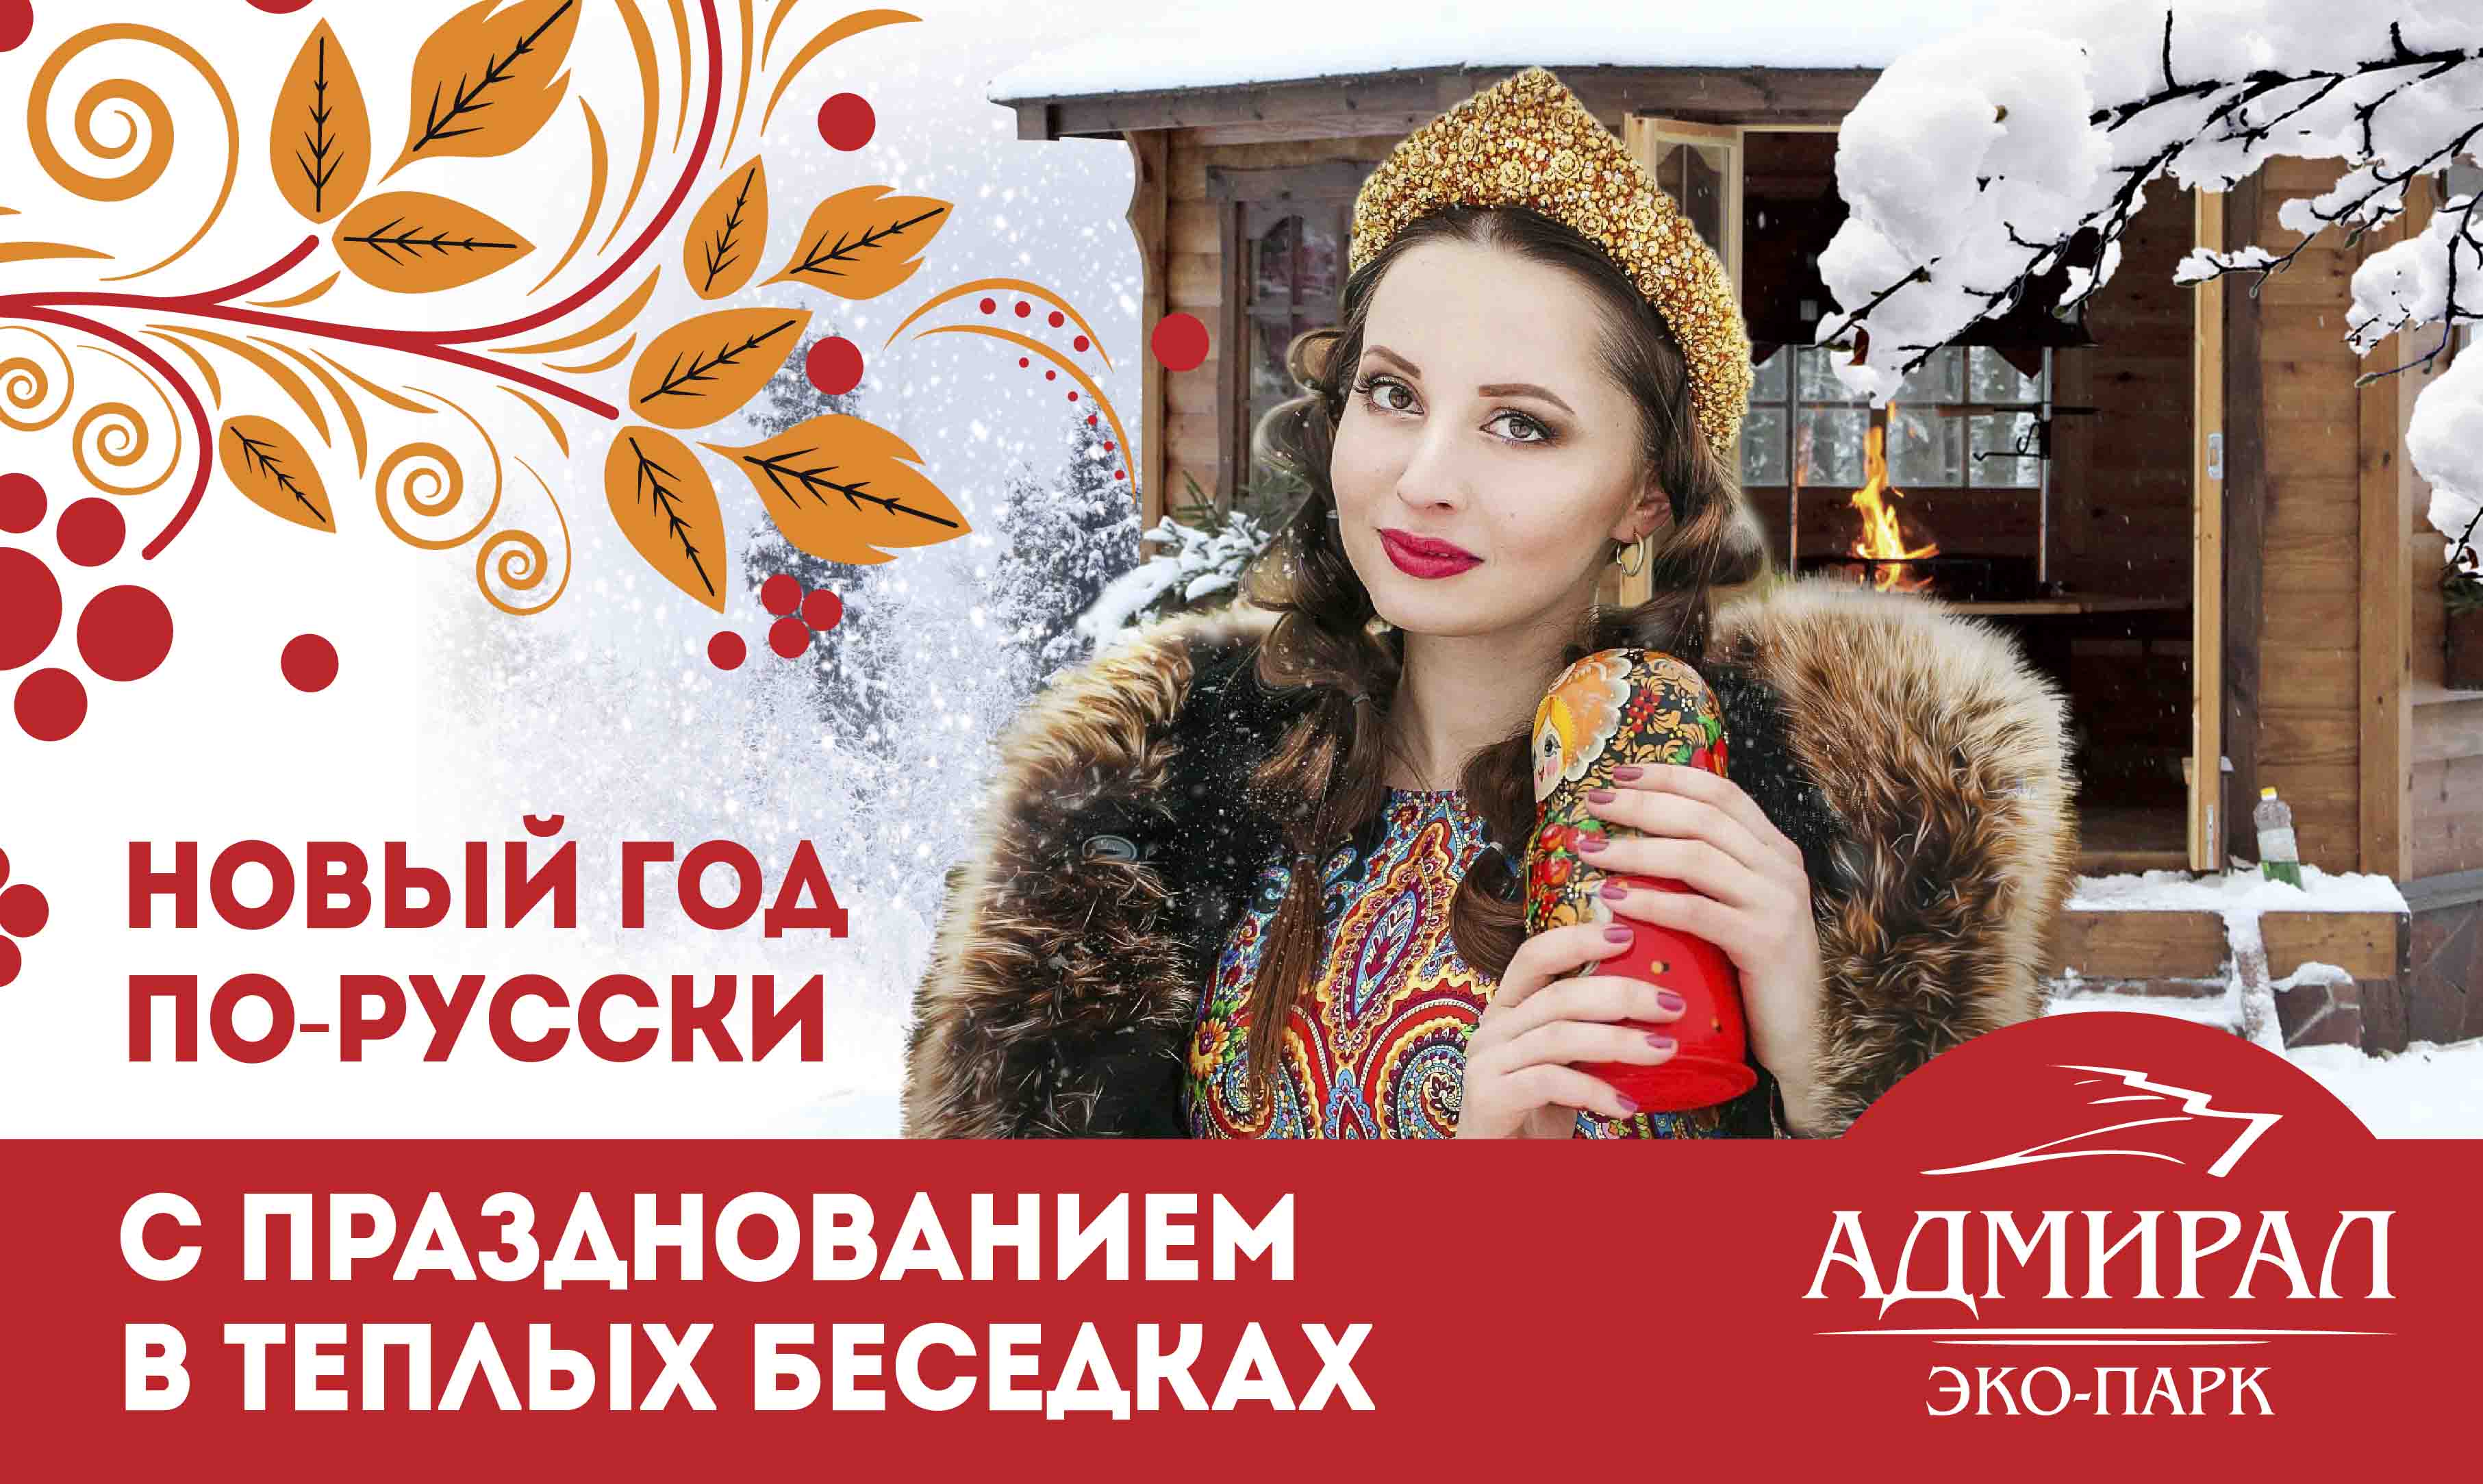 Новый Год 2020 По-Русски в беседках  в Красноярске, Эко-Парк Адмирал